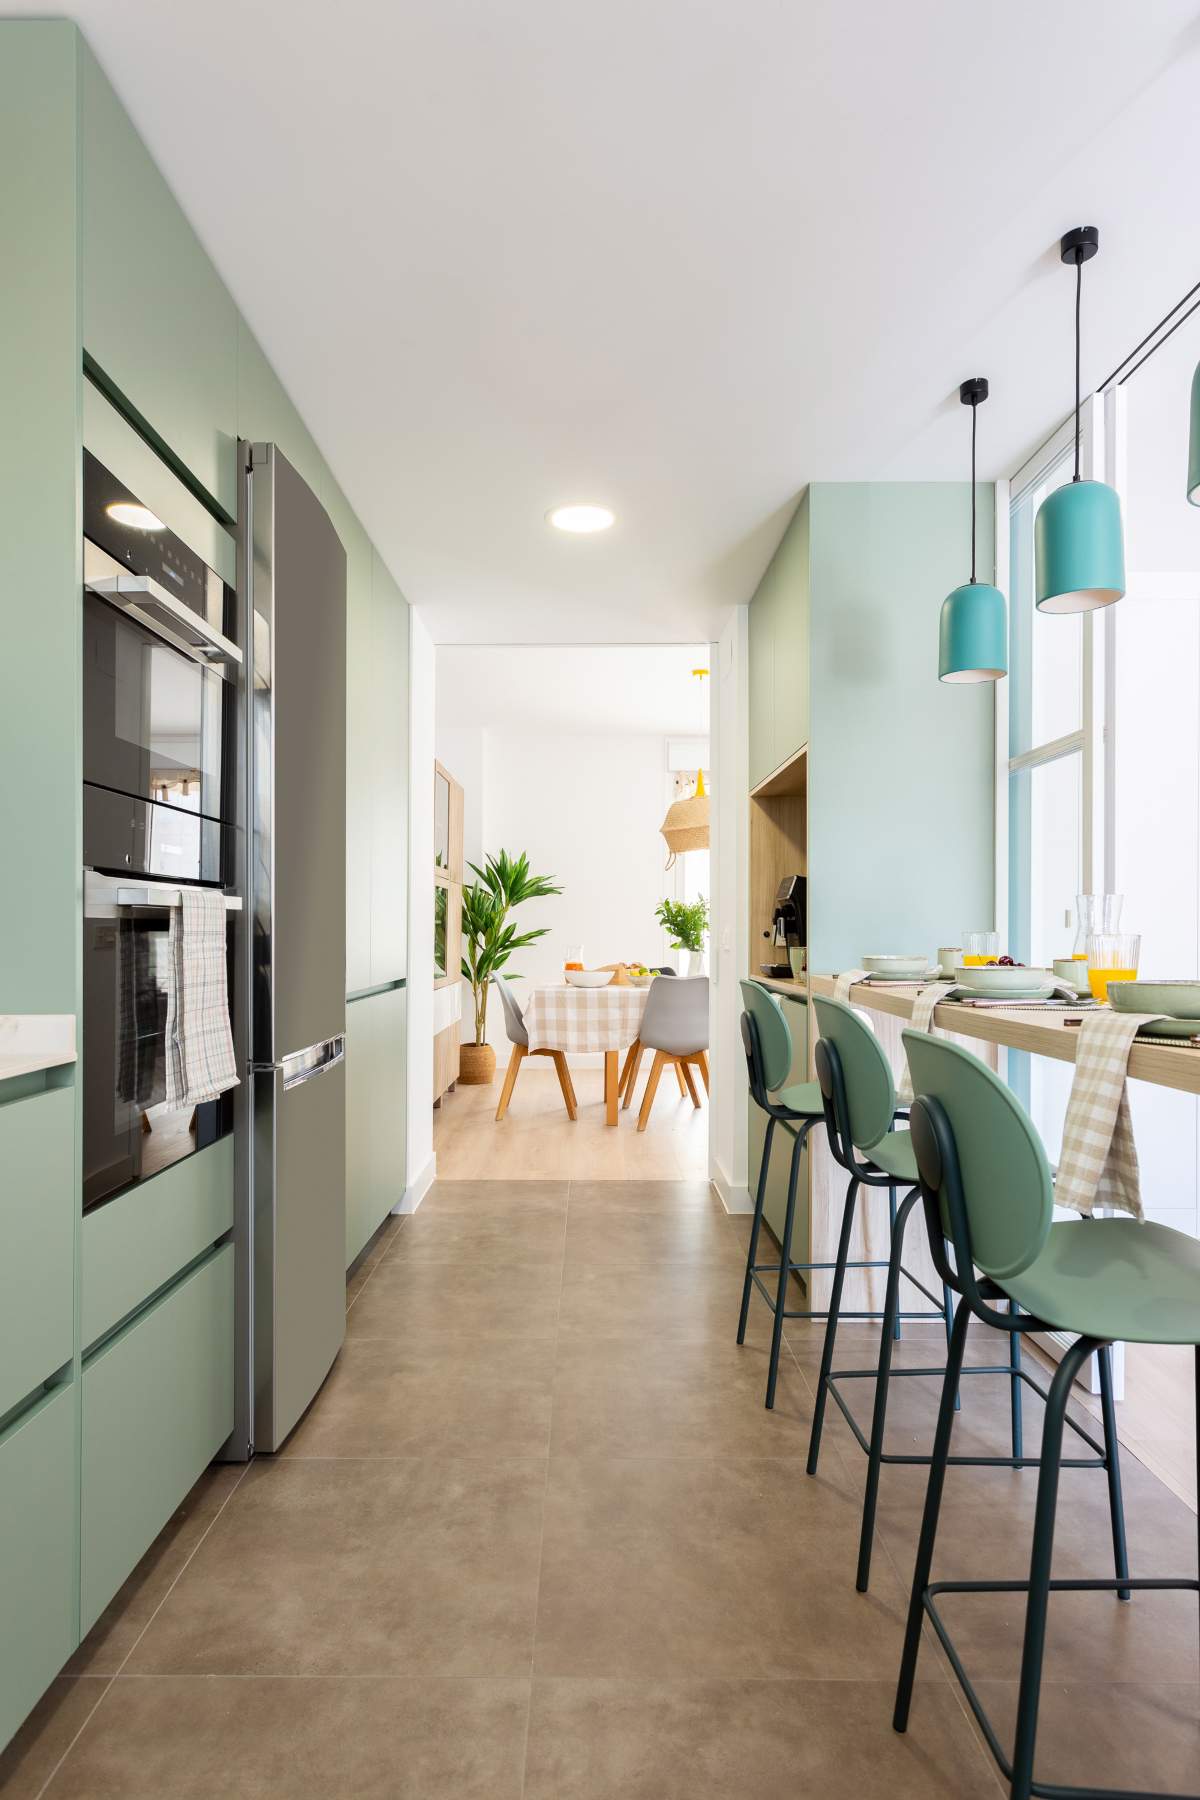 Una cocina larga y estrecha con desayunador, barra y mobiliario de color verde